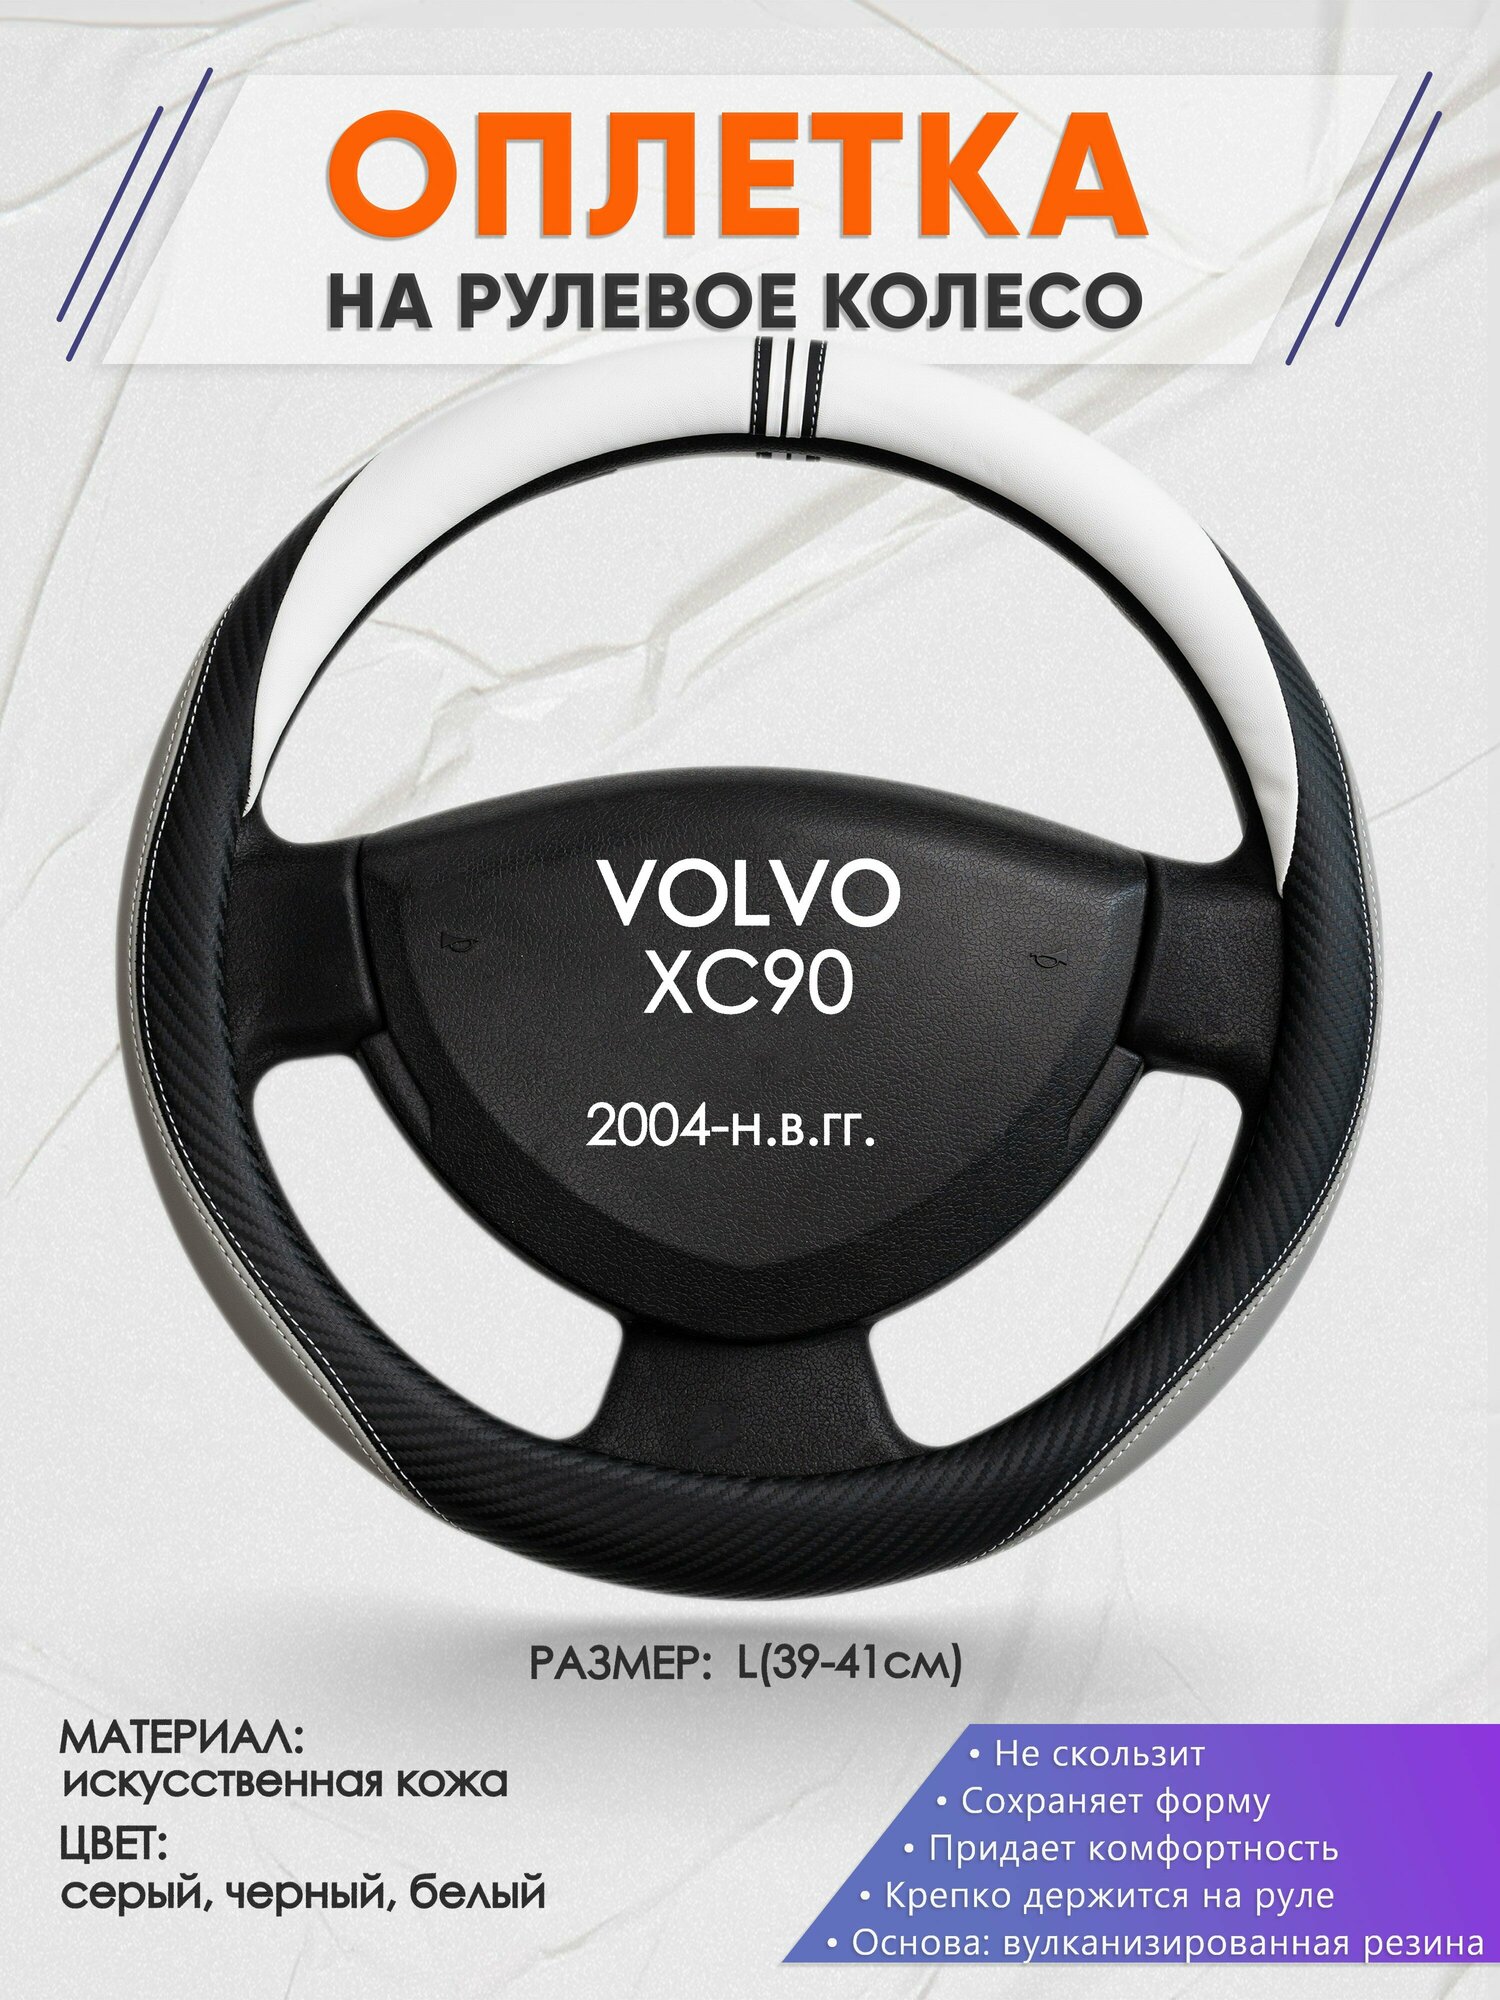 Оплетка на руль для VOLVO XC90(Вольво иксс90) 2004-н.в., L(39-41см), Искусственная кожа 58